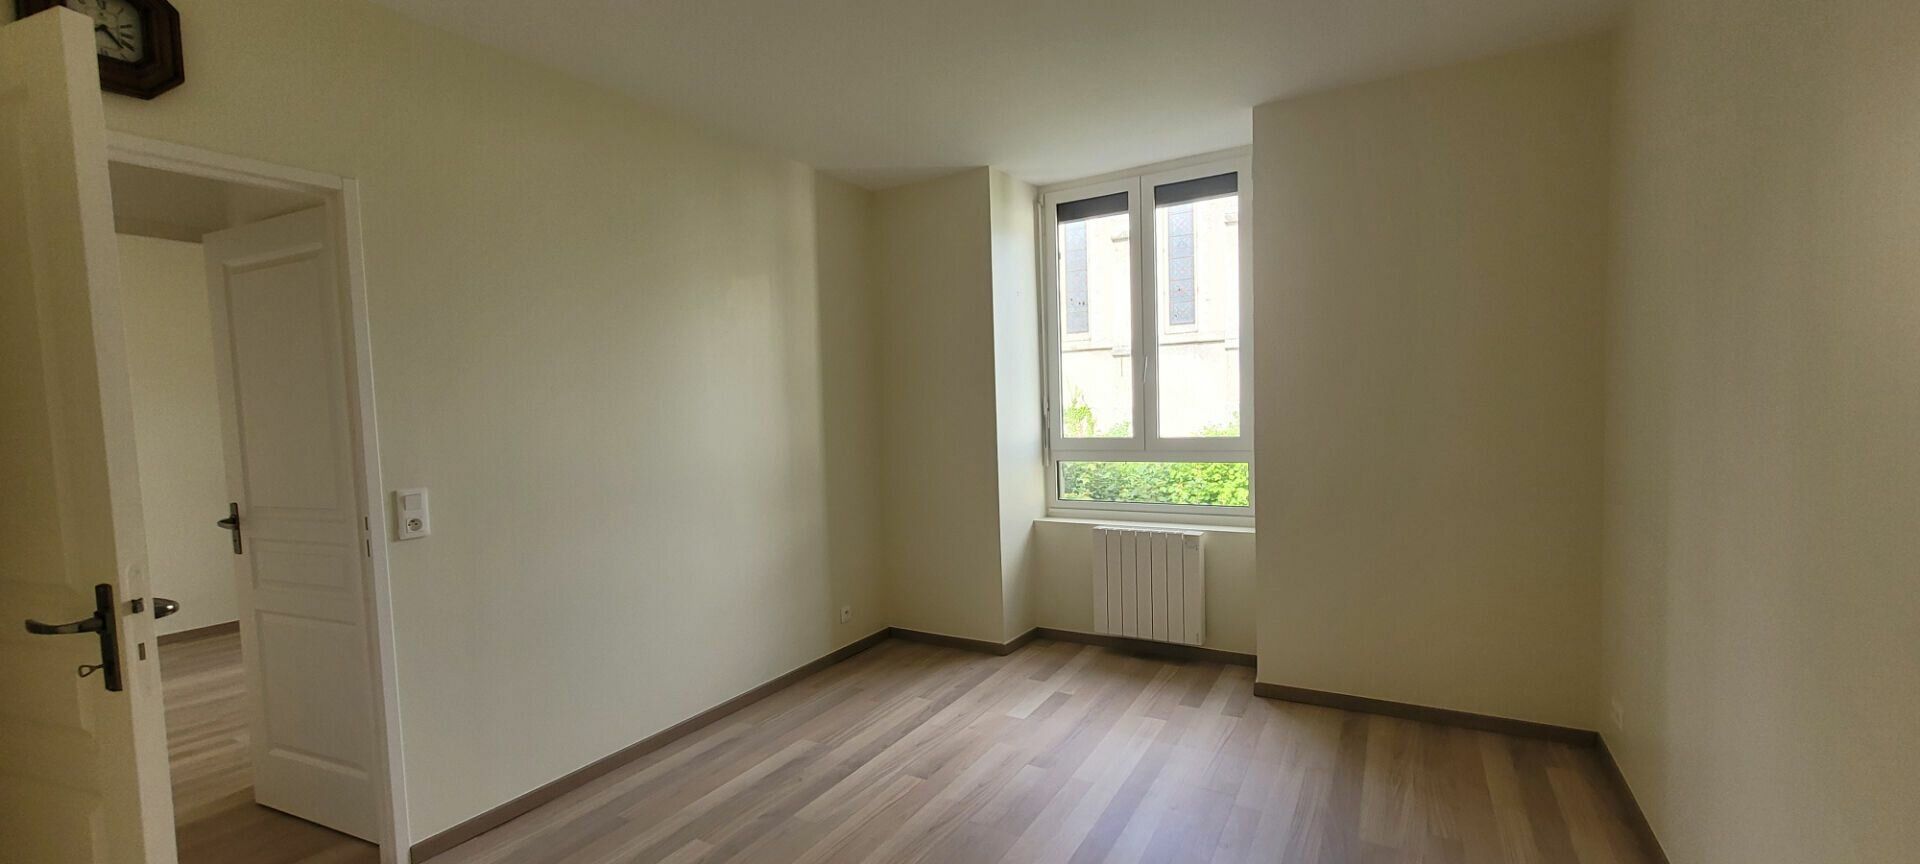 Appartement à vendre 3 103m2 à Saint-Brieuc vignette-6